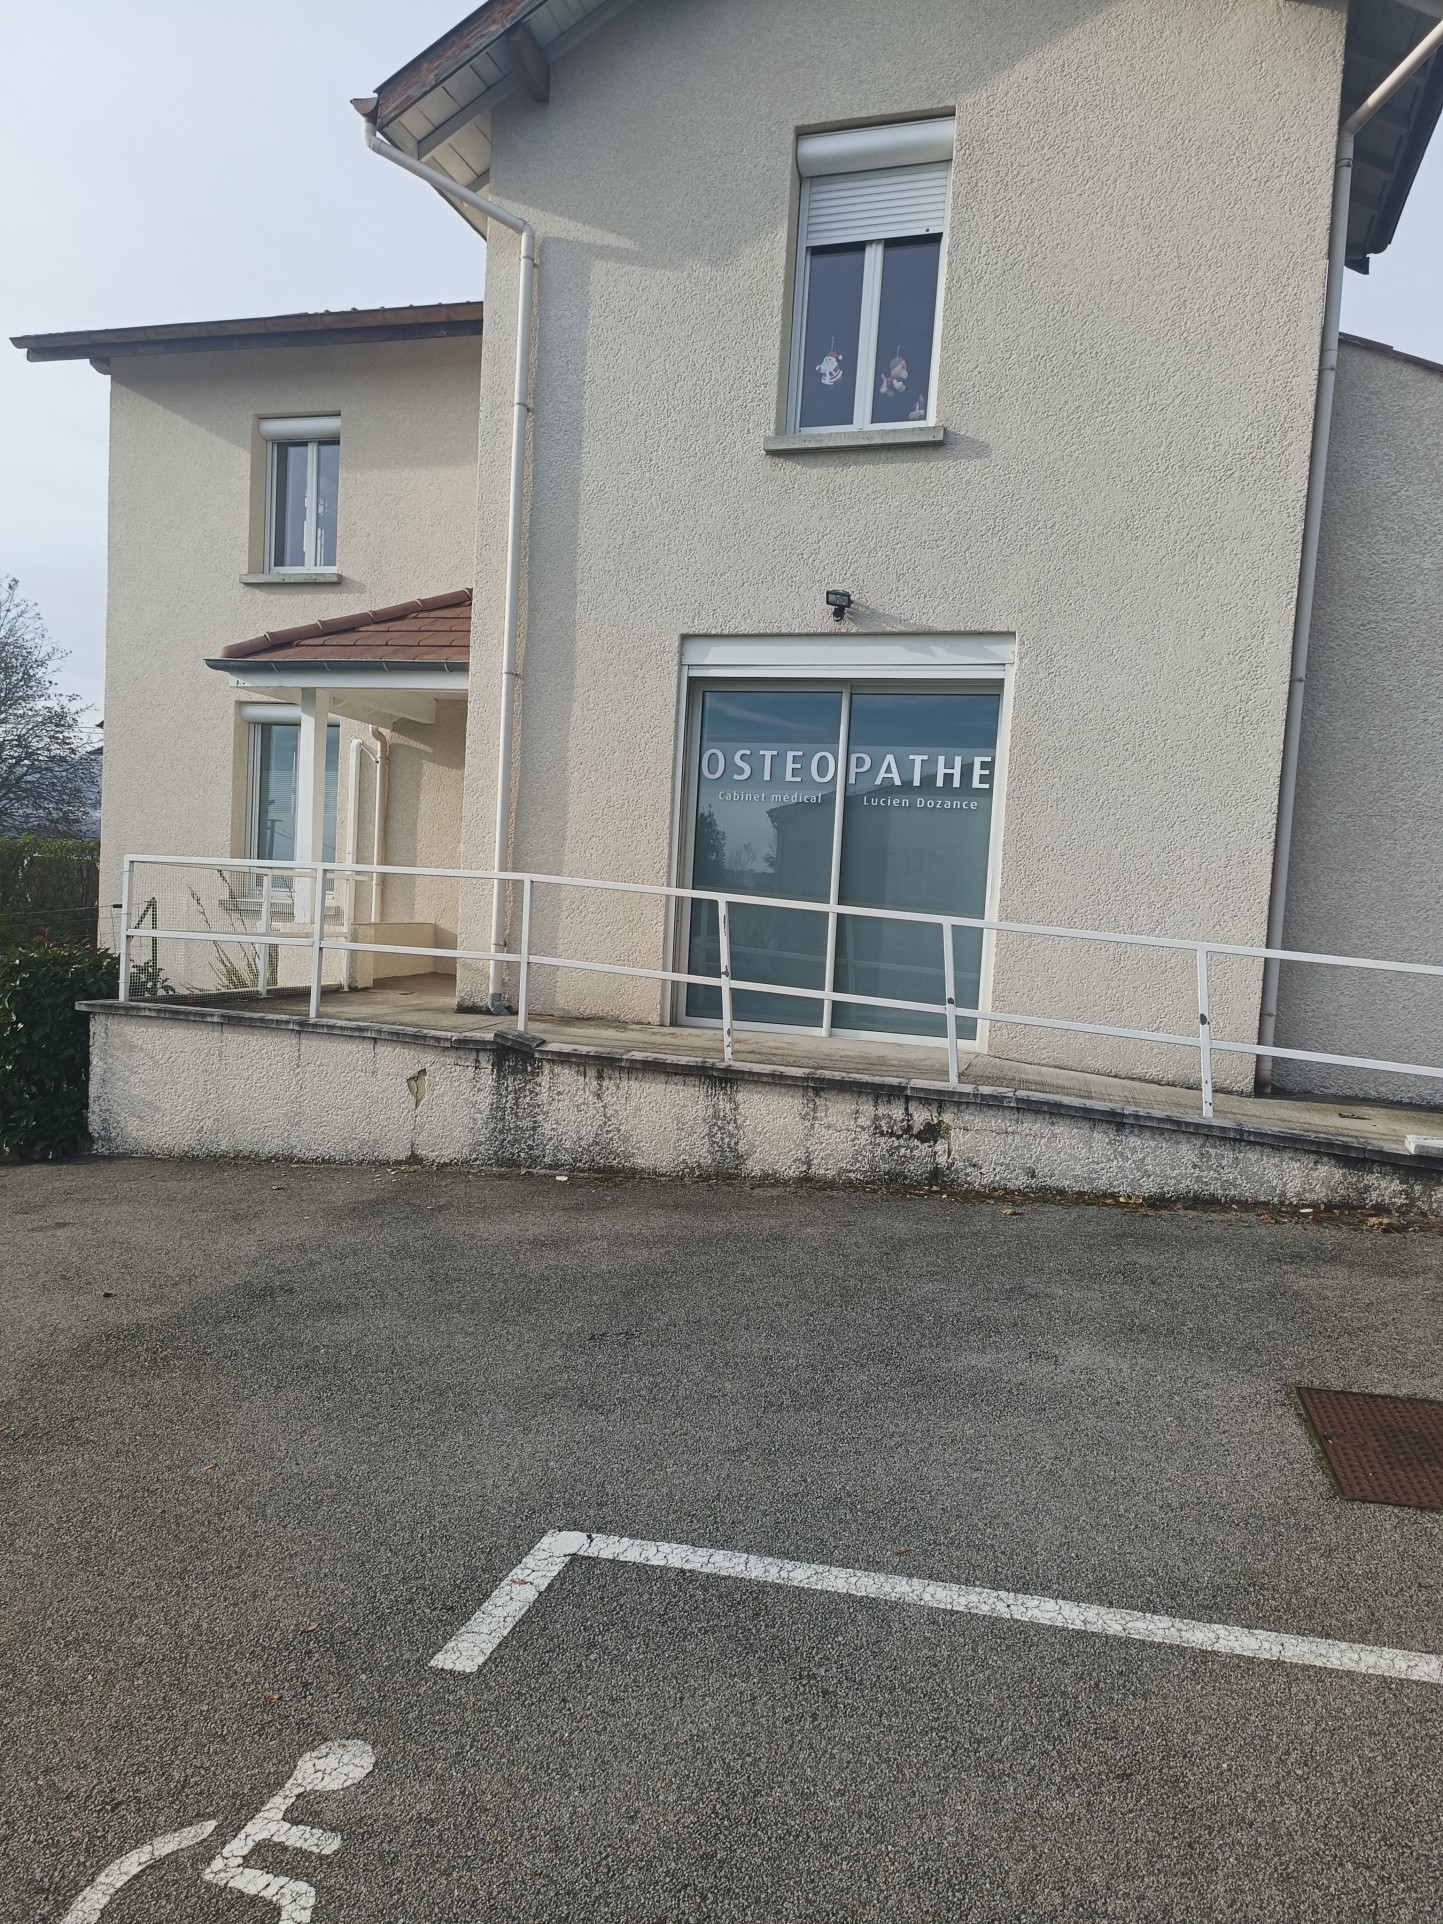 Location Bureau / Commerce à Boulieu-lès-Annonay 0 pièce